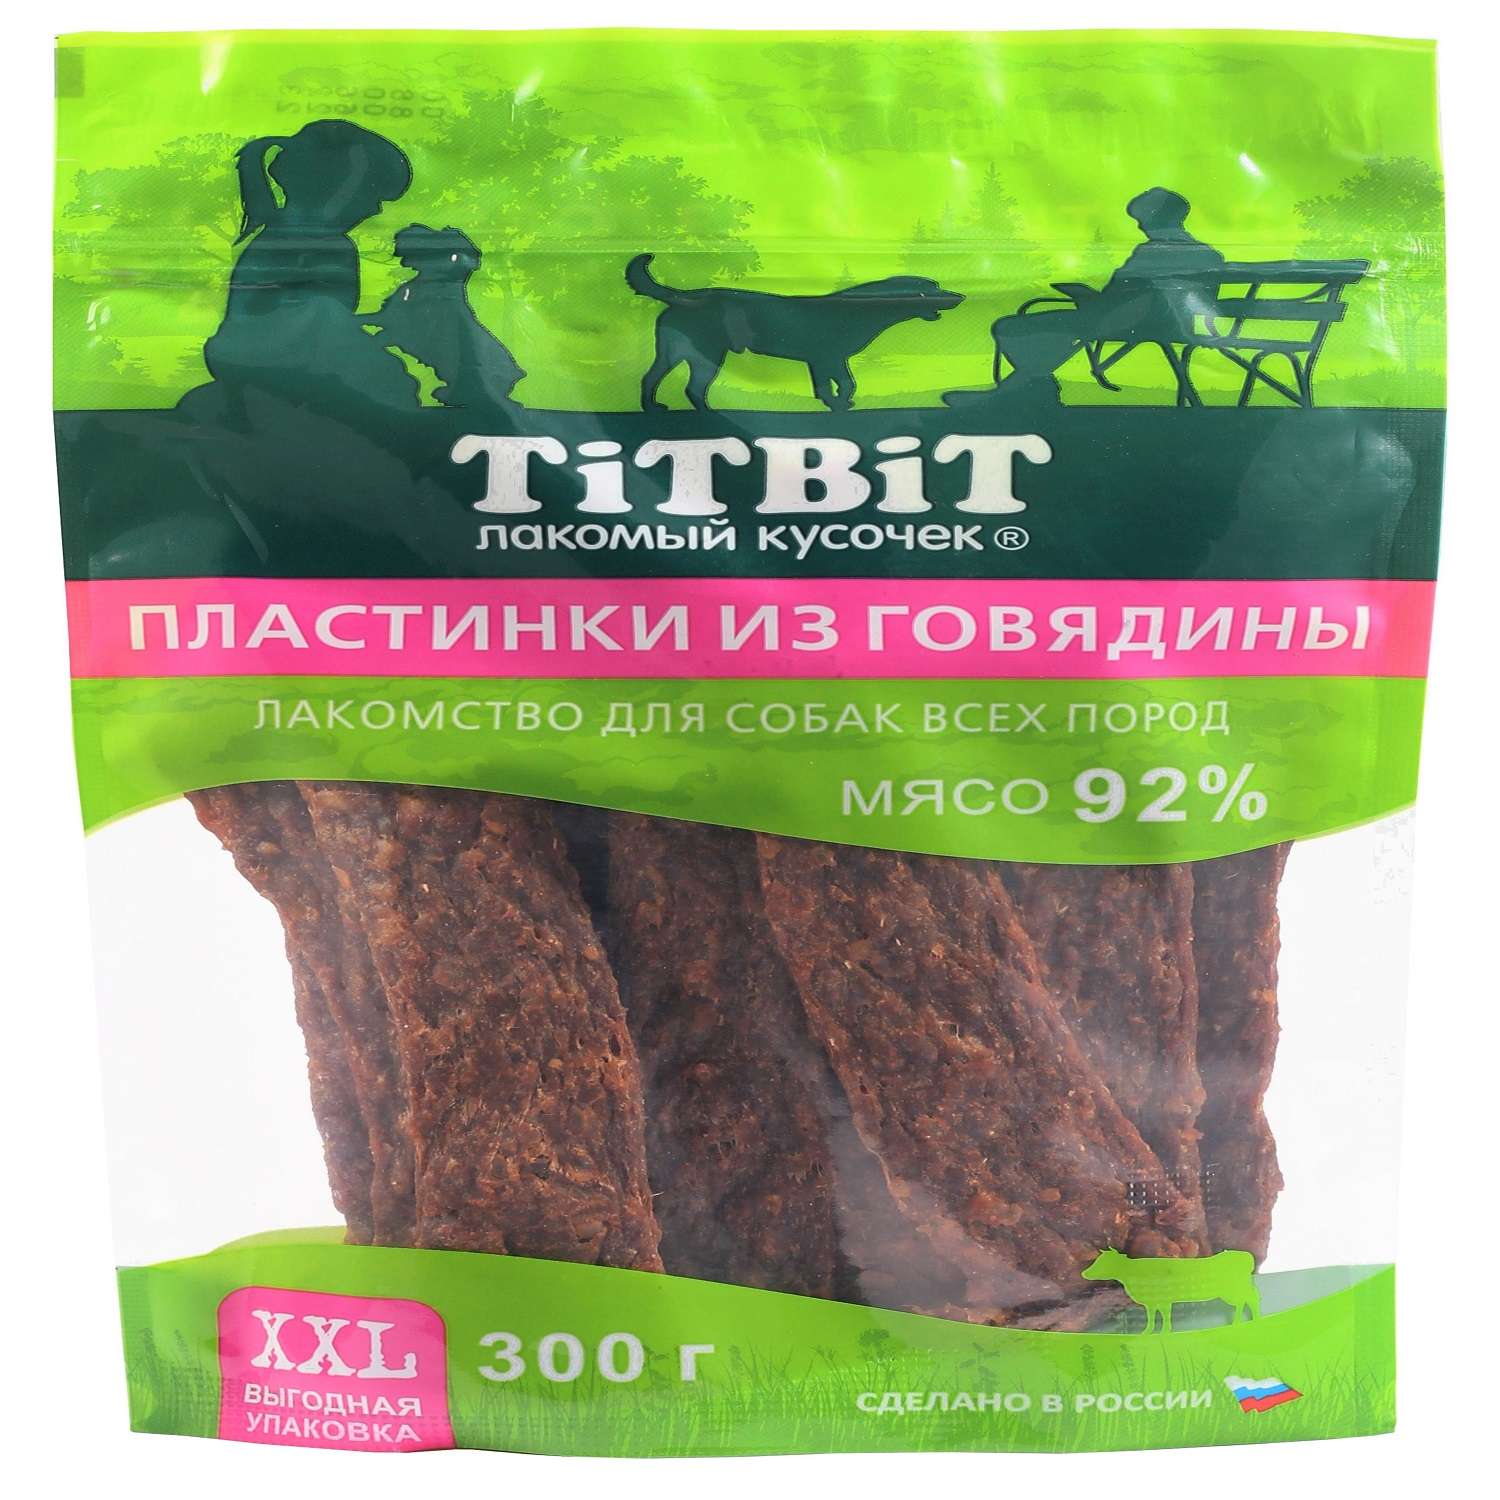 Лакомство для собак Titbit 300г пластинки из говядины - фото 1